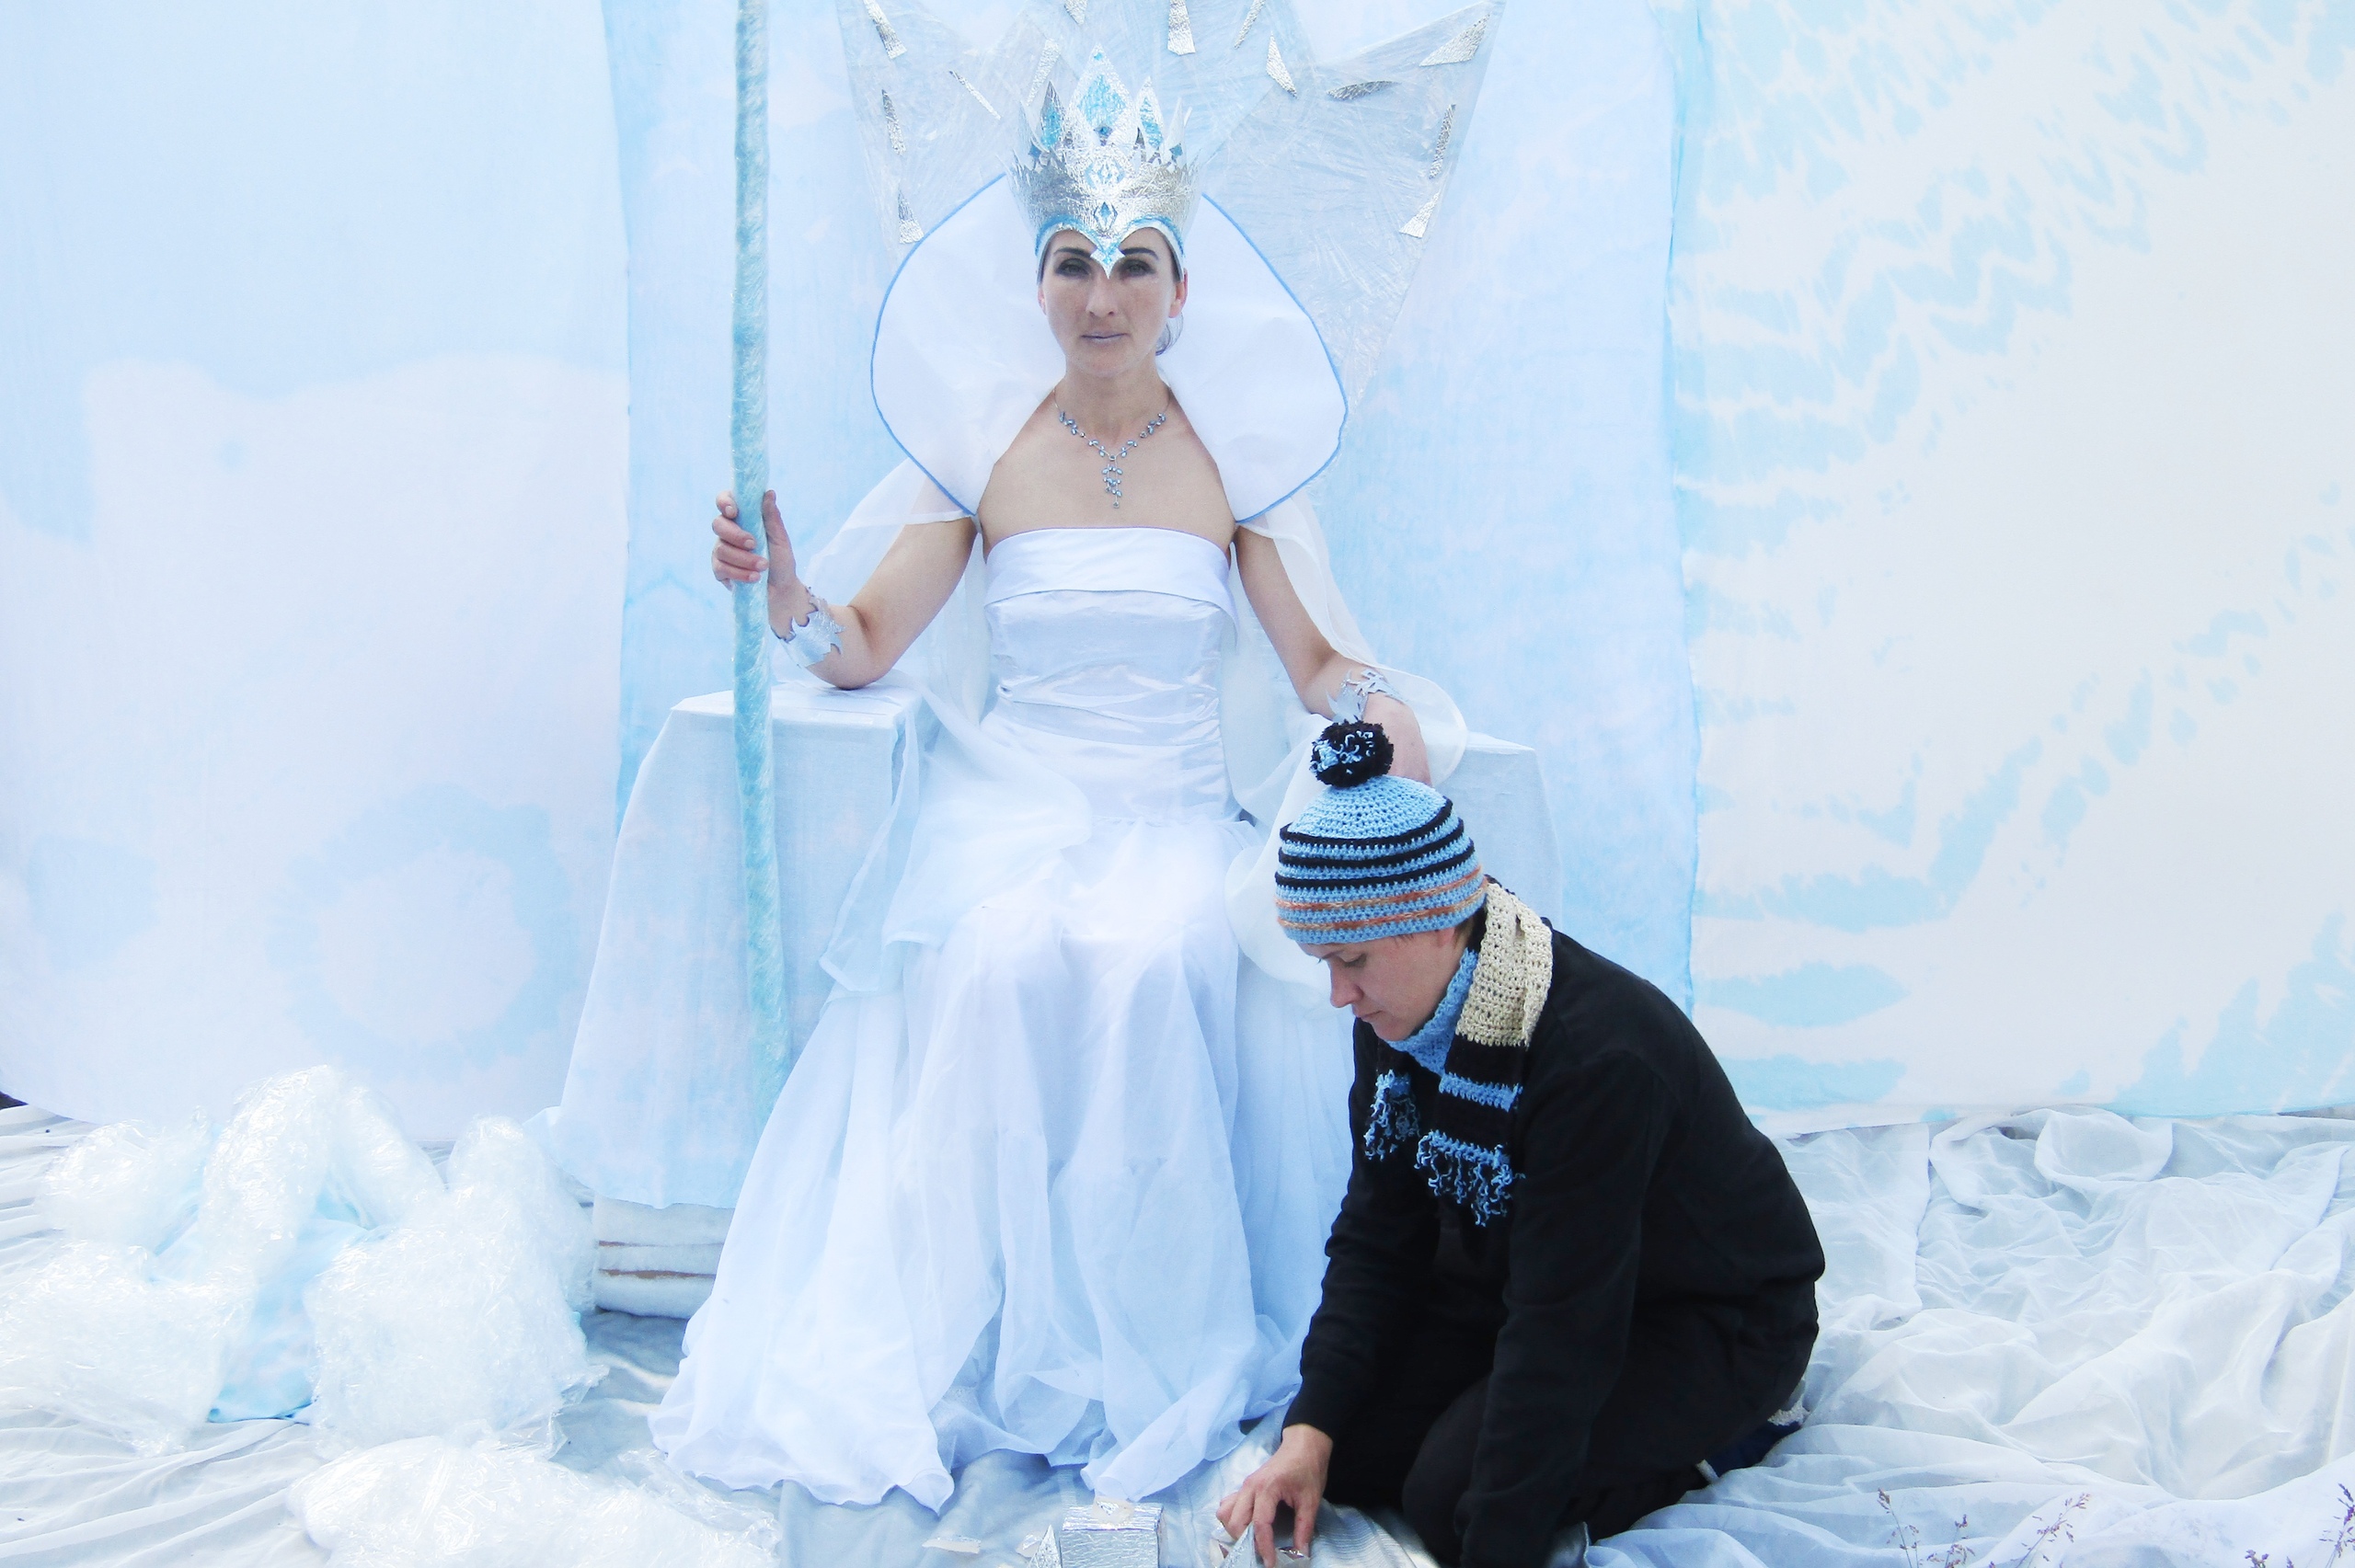 Номинация «Сказочный образ», осужденная ИК-18: Снежная королева